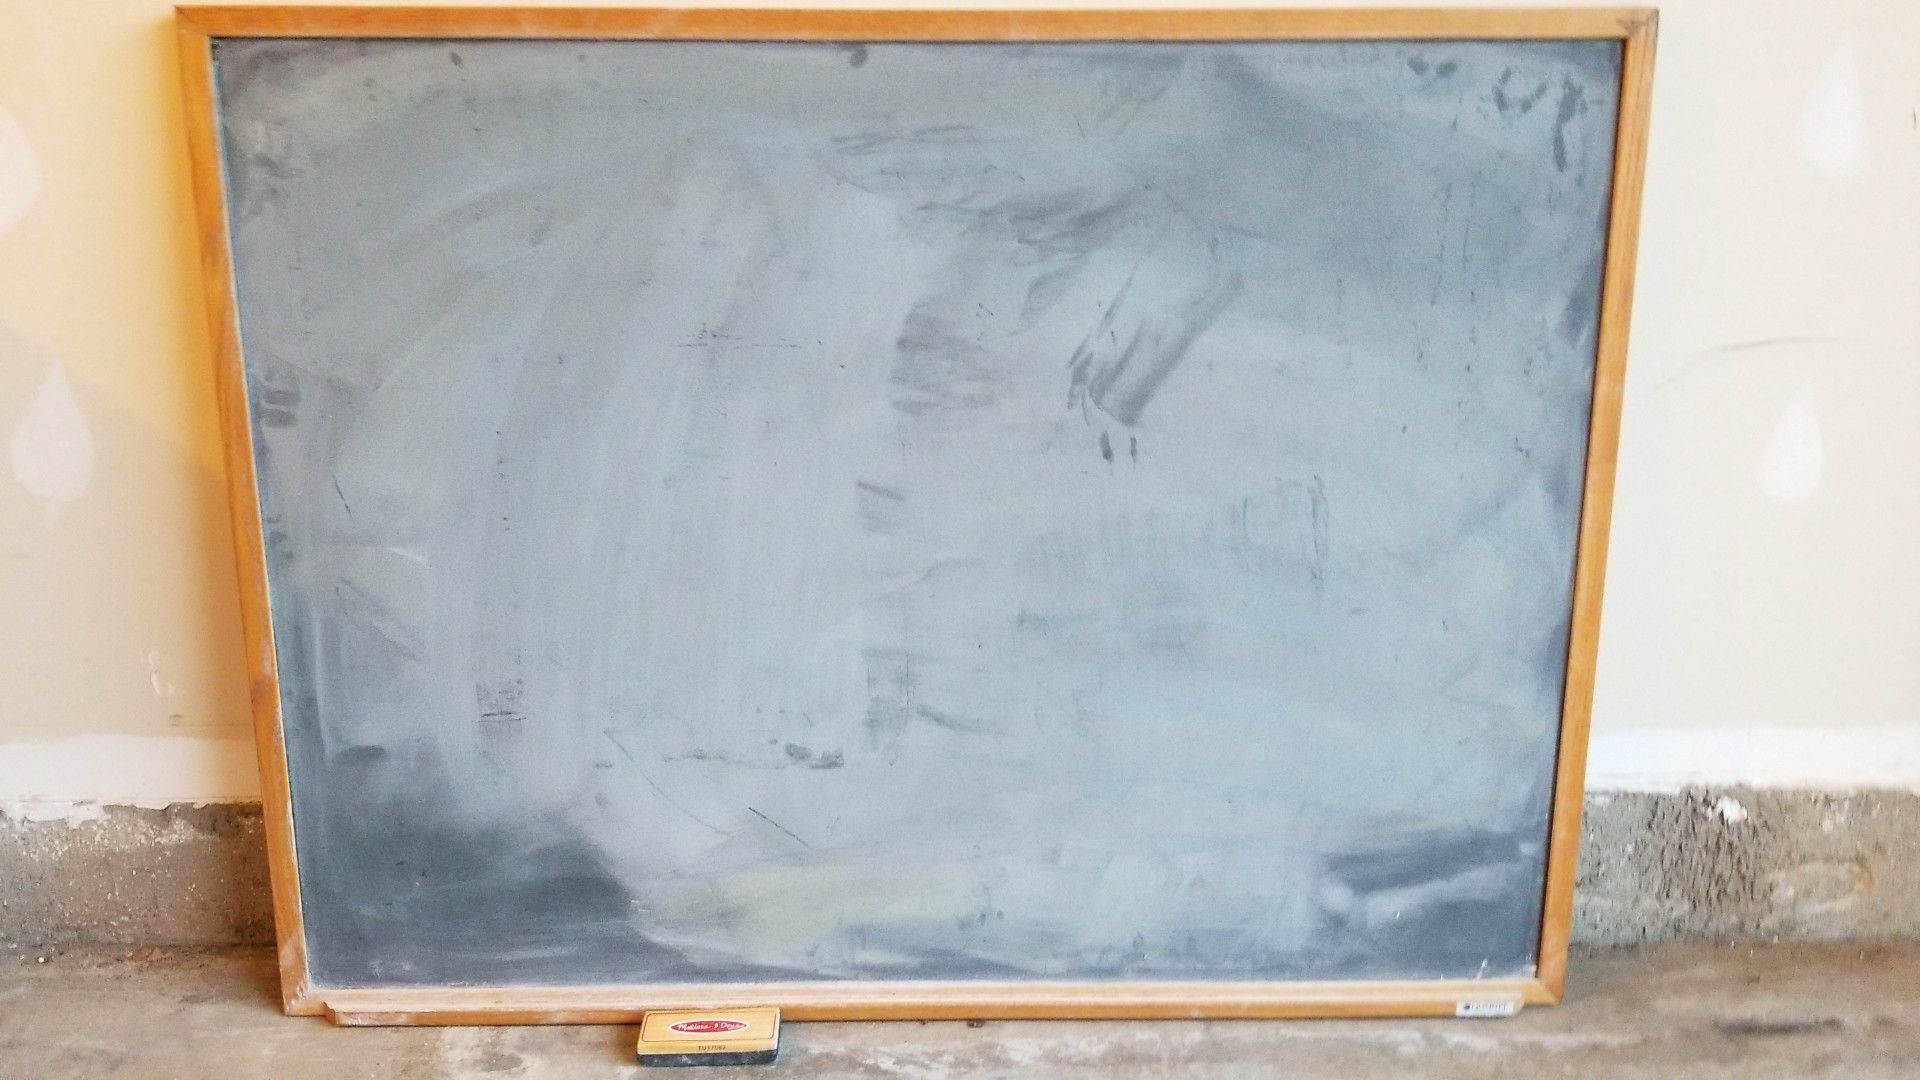 3' H x 4' W chalkboard with eraser